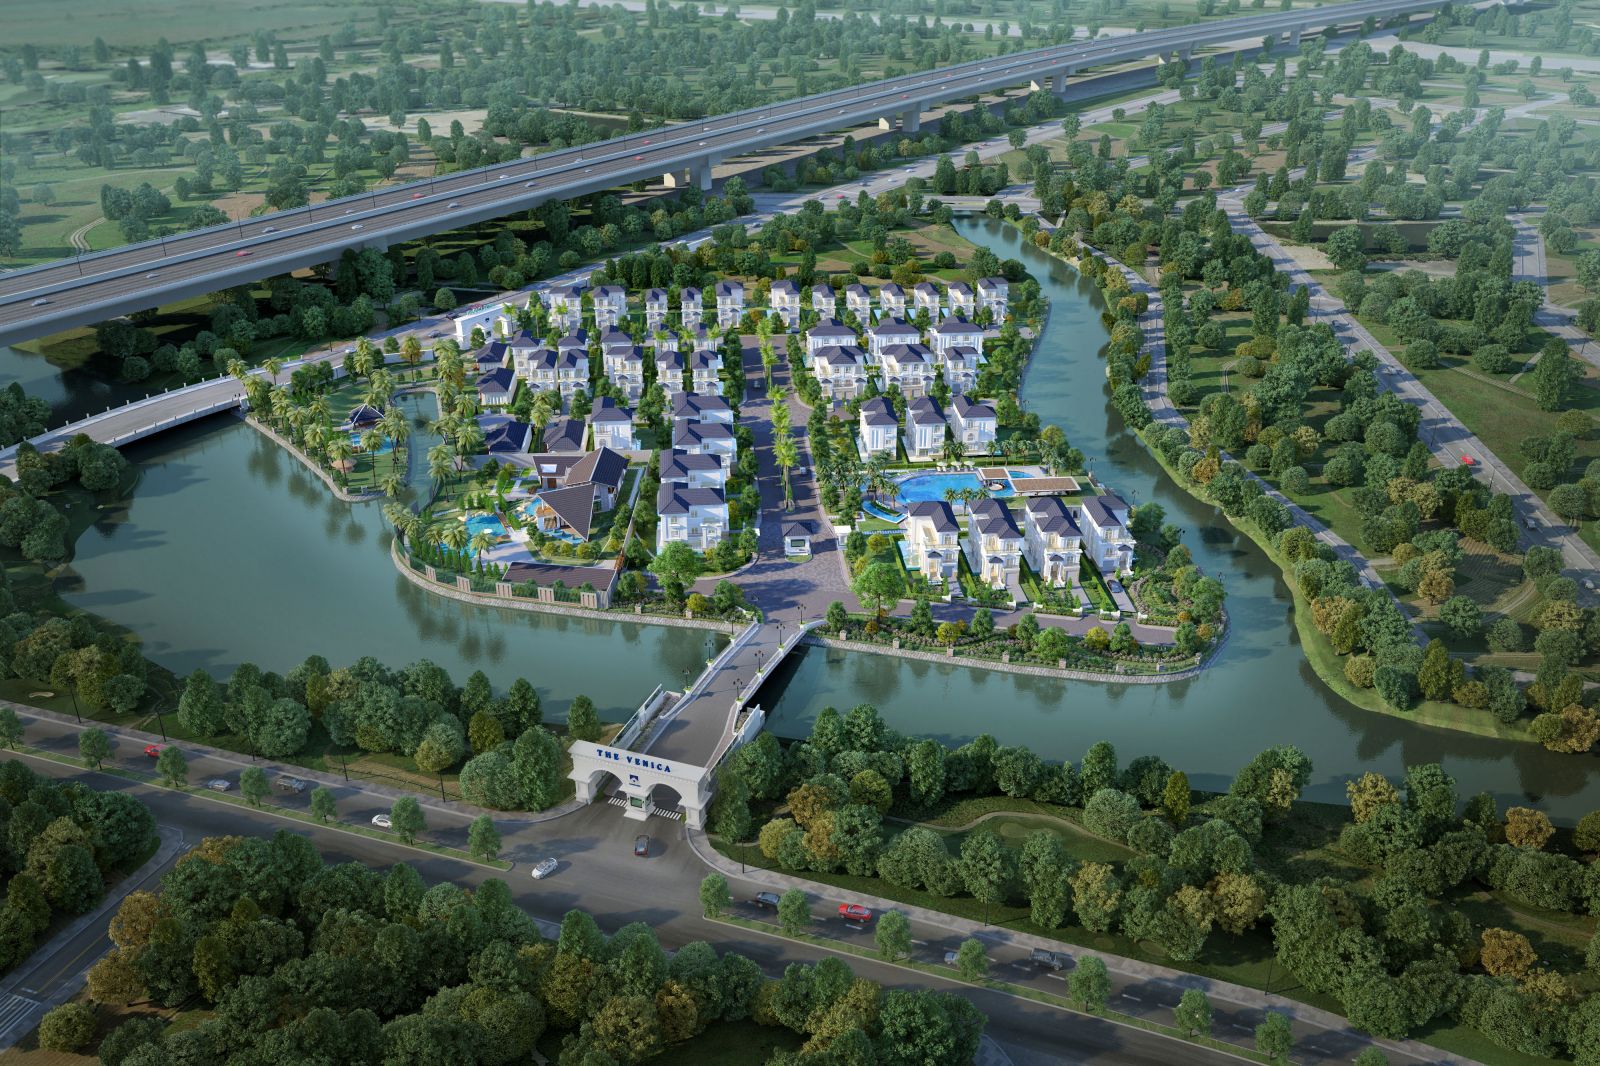 Phó Tổng giám đốc Khang Điền nhận giải thưởng PropertyGuru Vietnam Property Awards 2018 – Hạng mục Best Luxury Housing Development